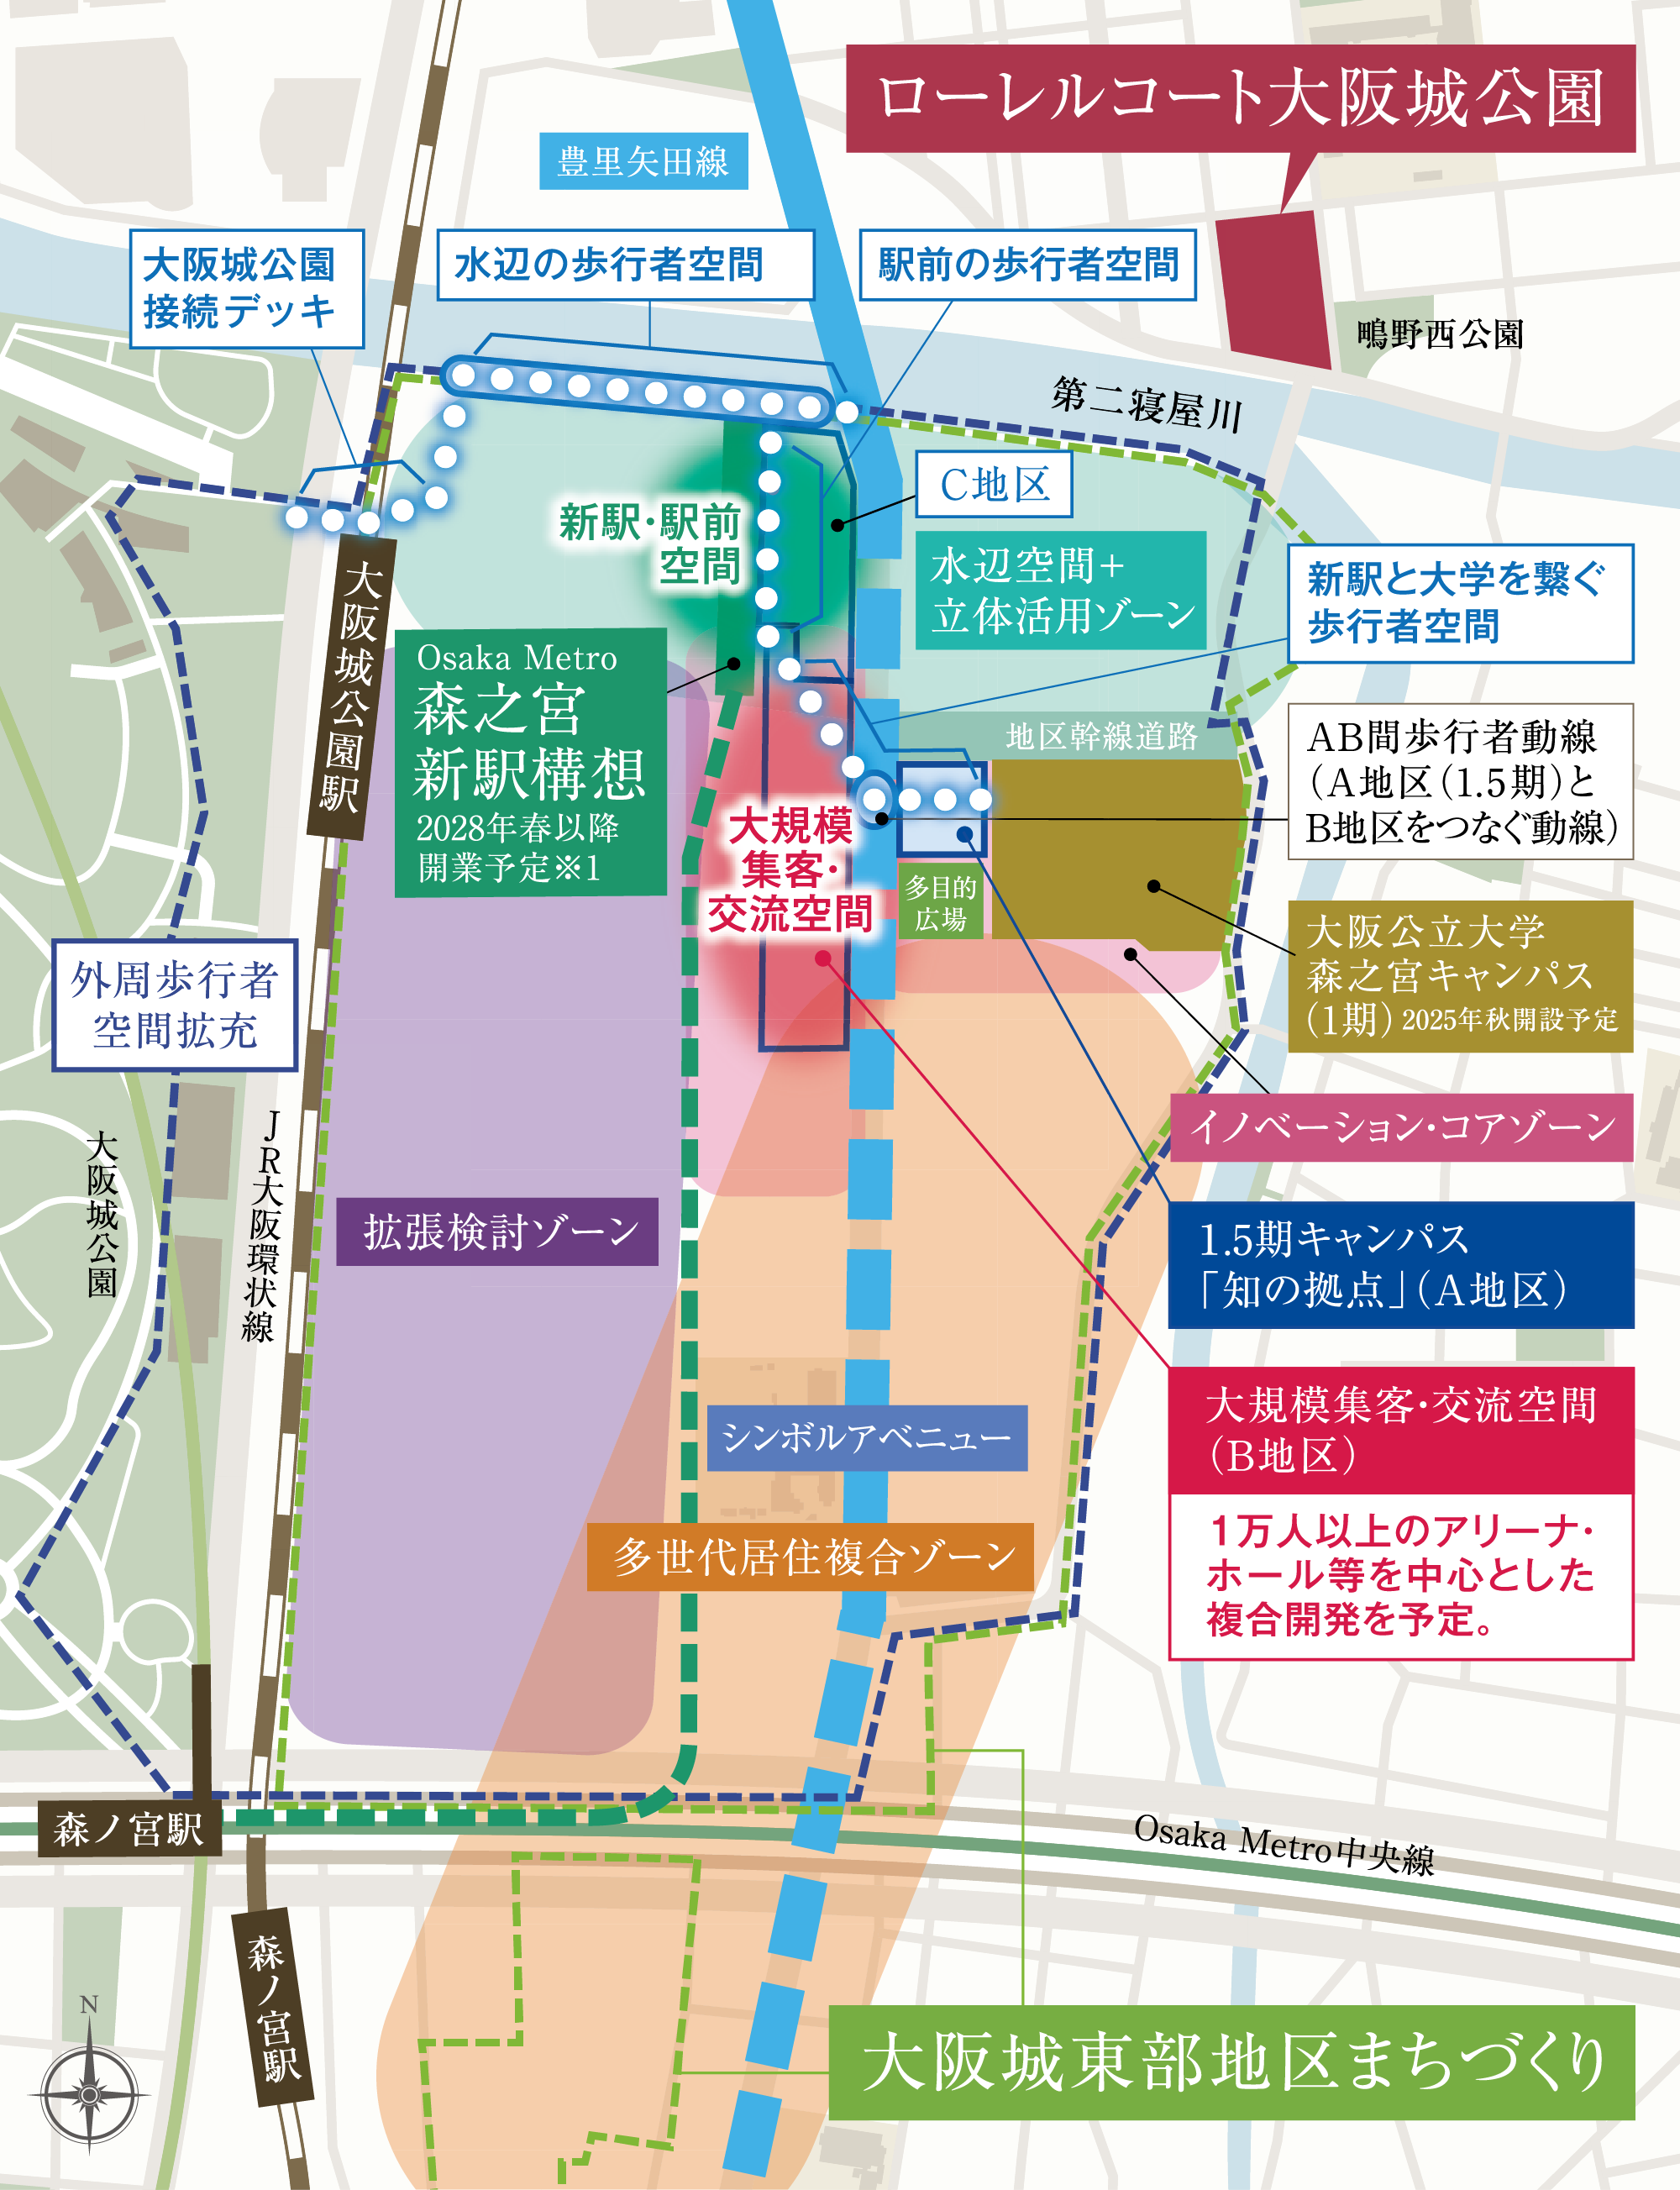 「大阪城東部地区まちづくりエリアマップ」